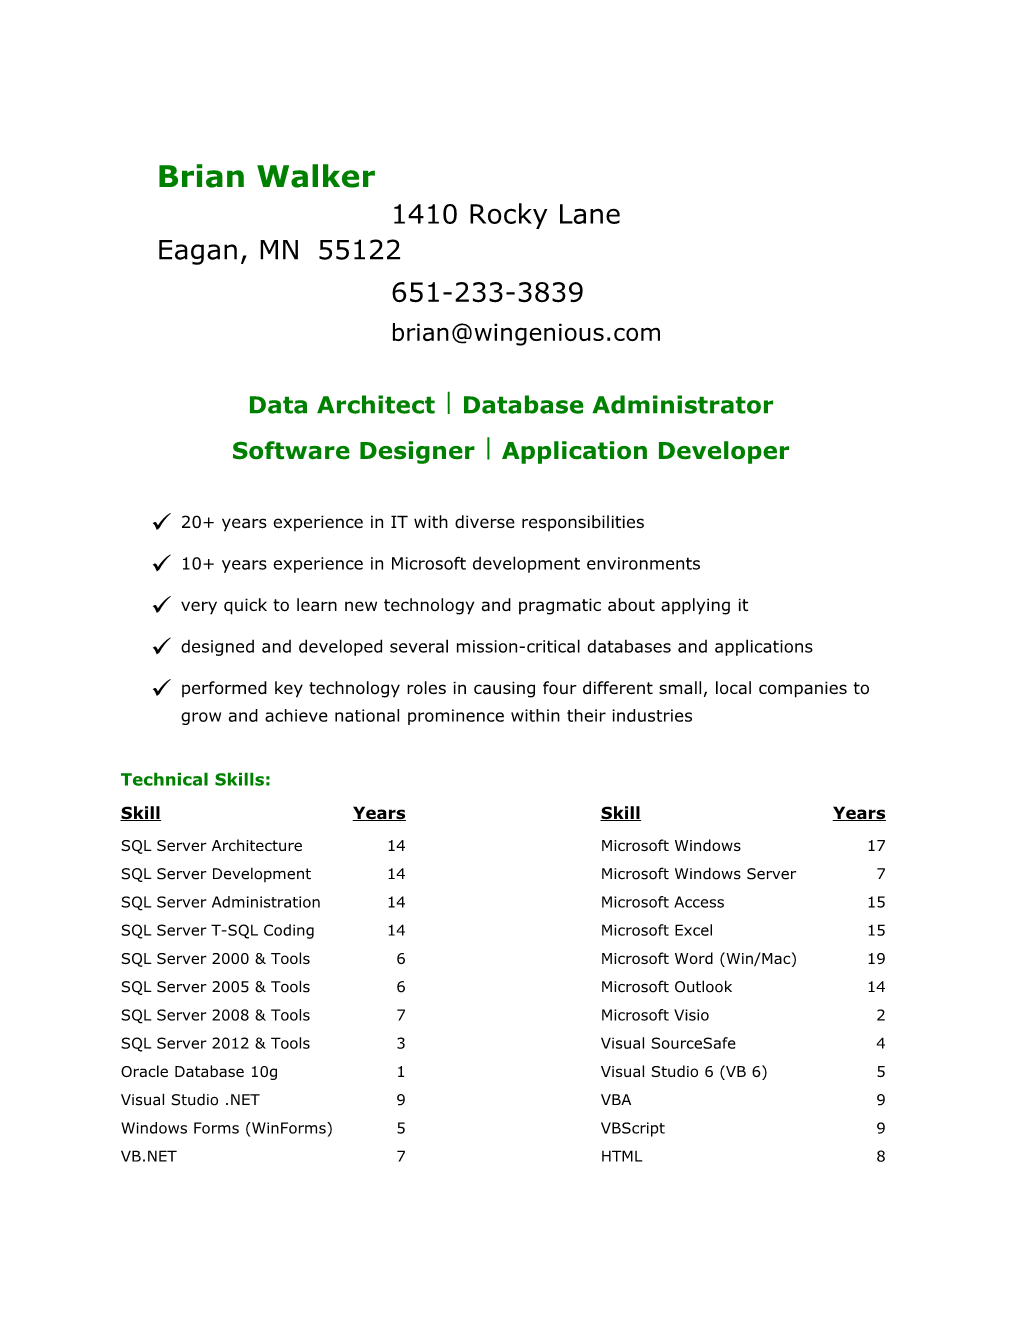 Data Architect Database Administrator